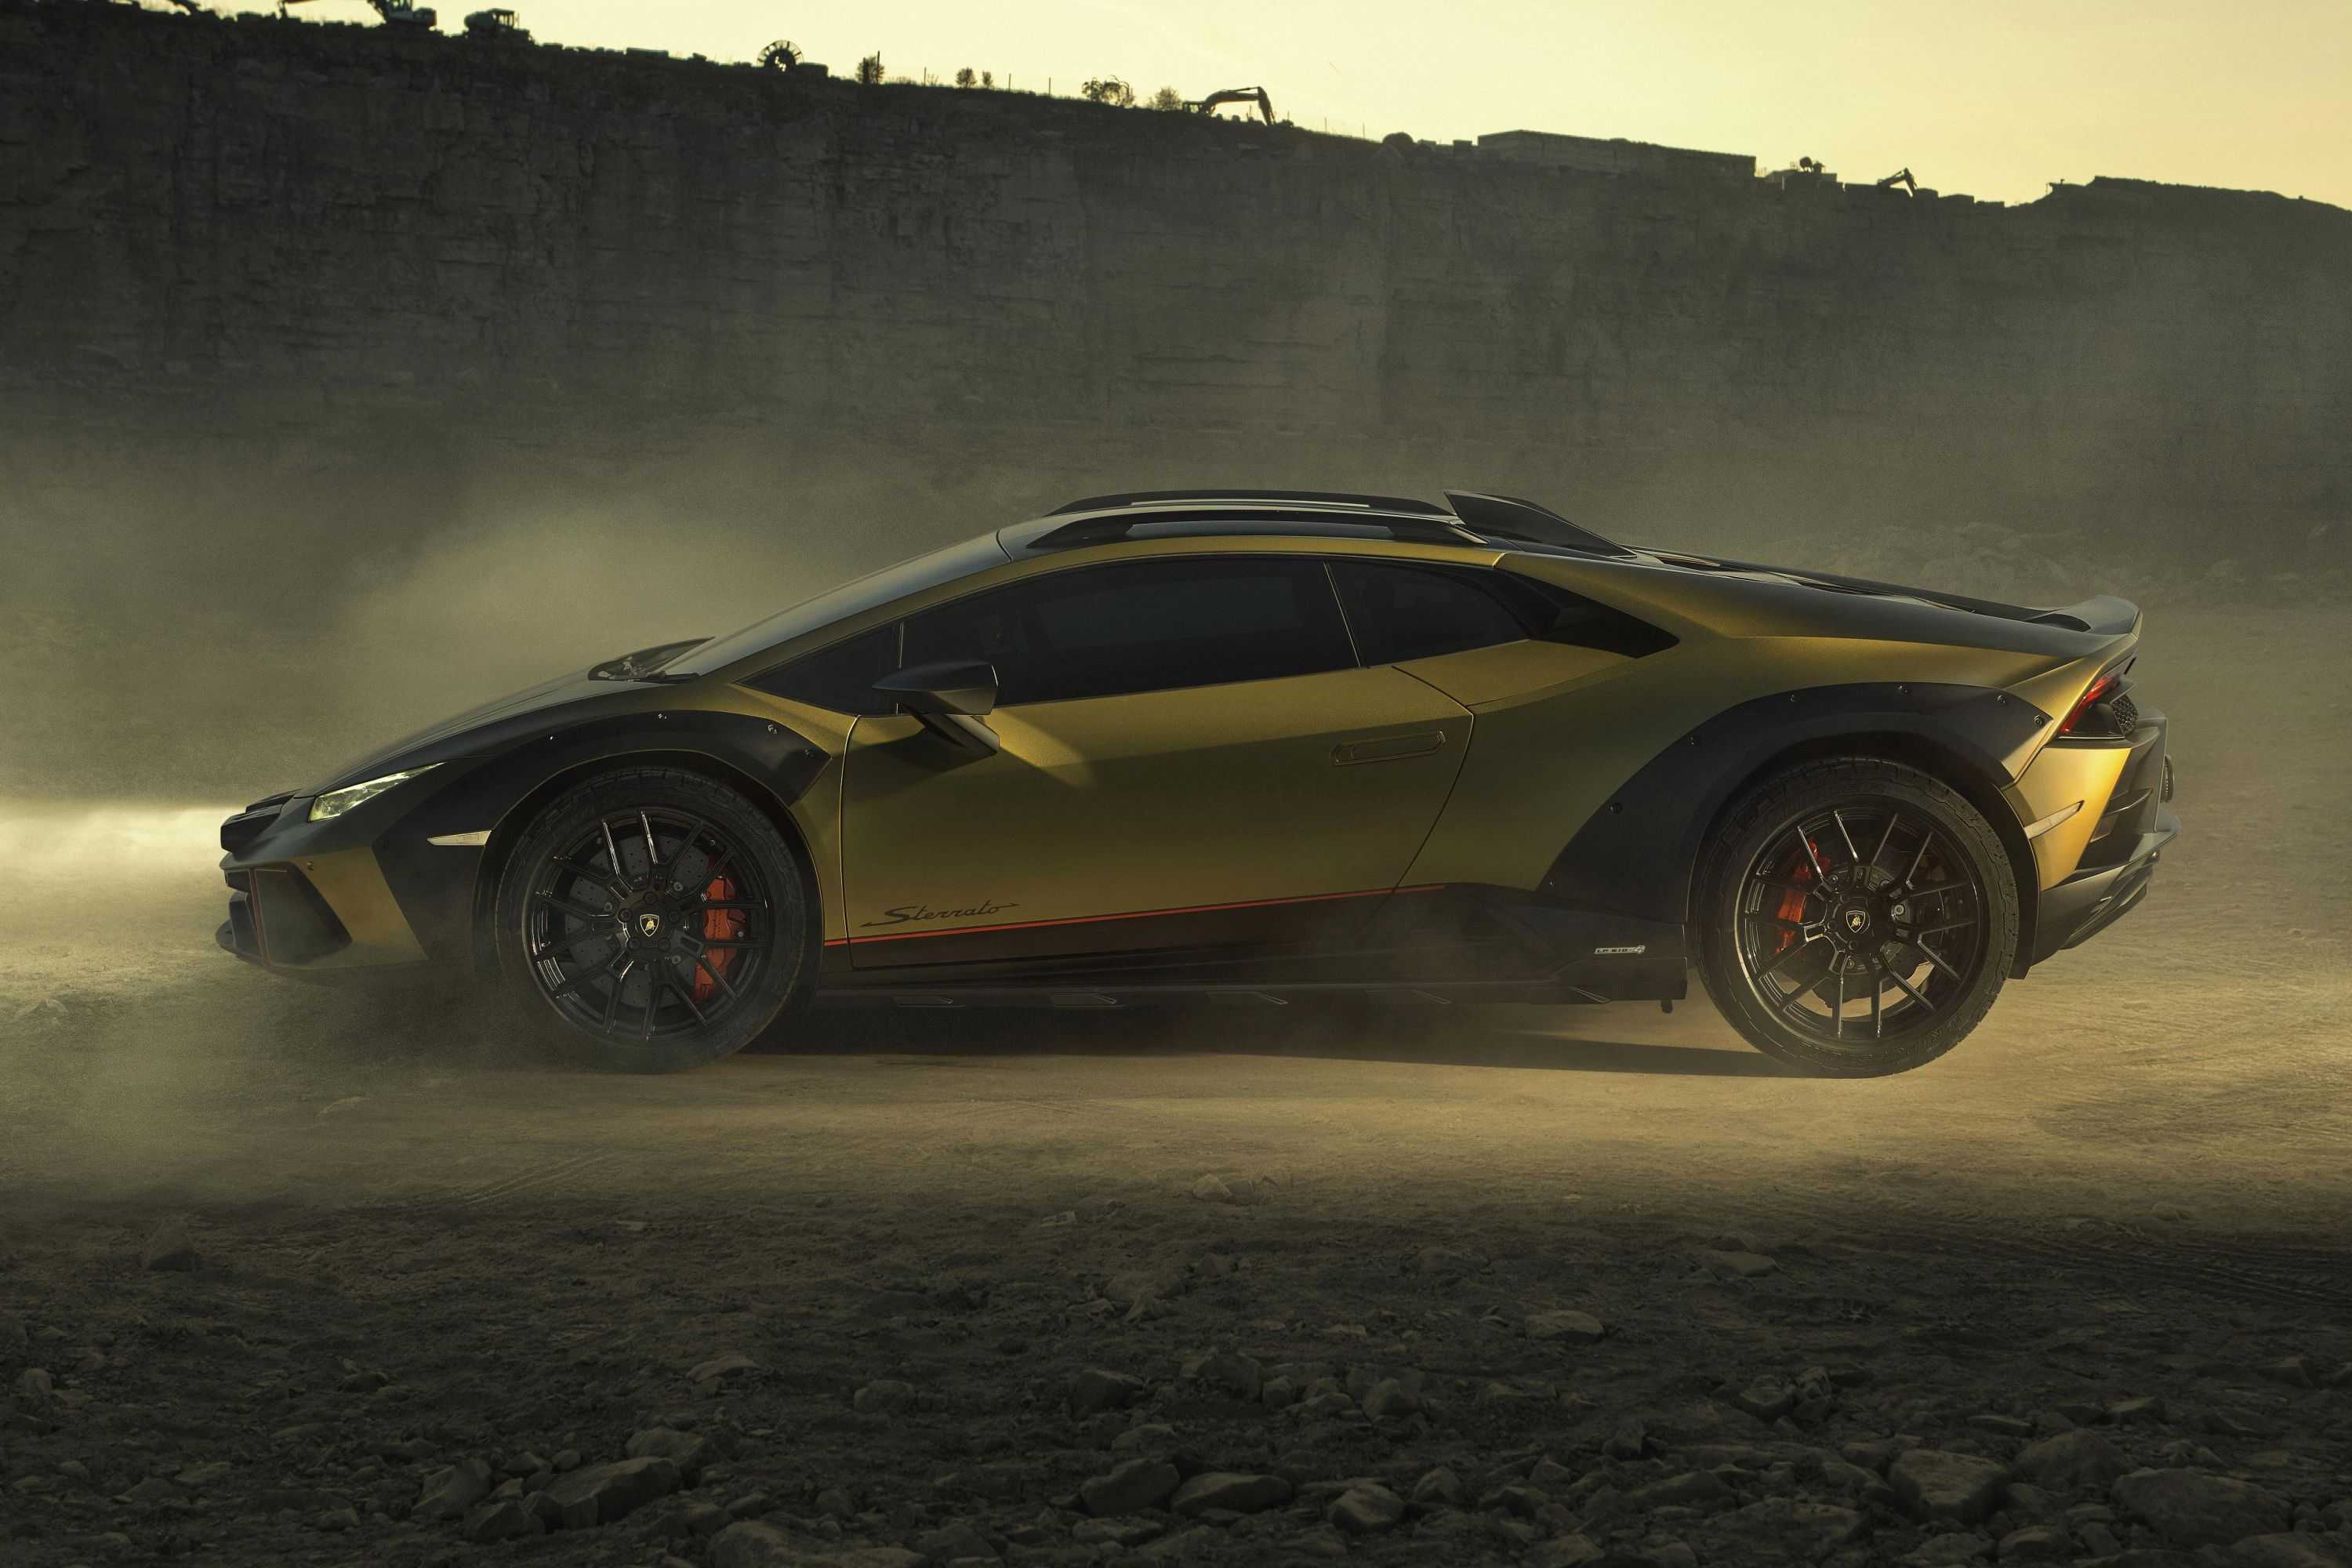 Lamborghini представила спорткар Huracan Sterrato для бездорожья